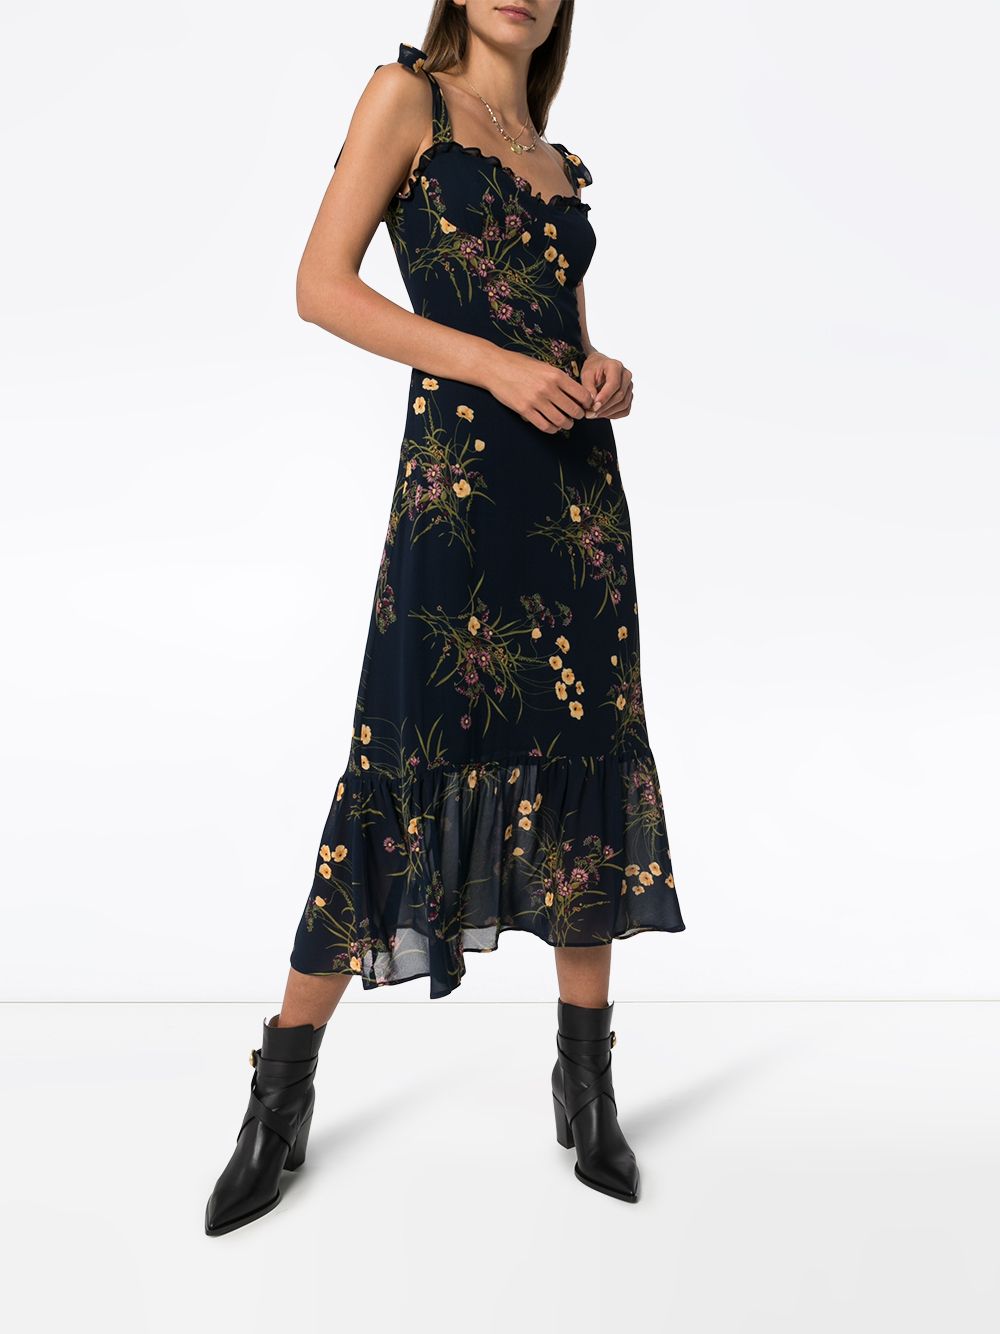 фото Reformation платье nikita с цветочным принтом